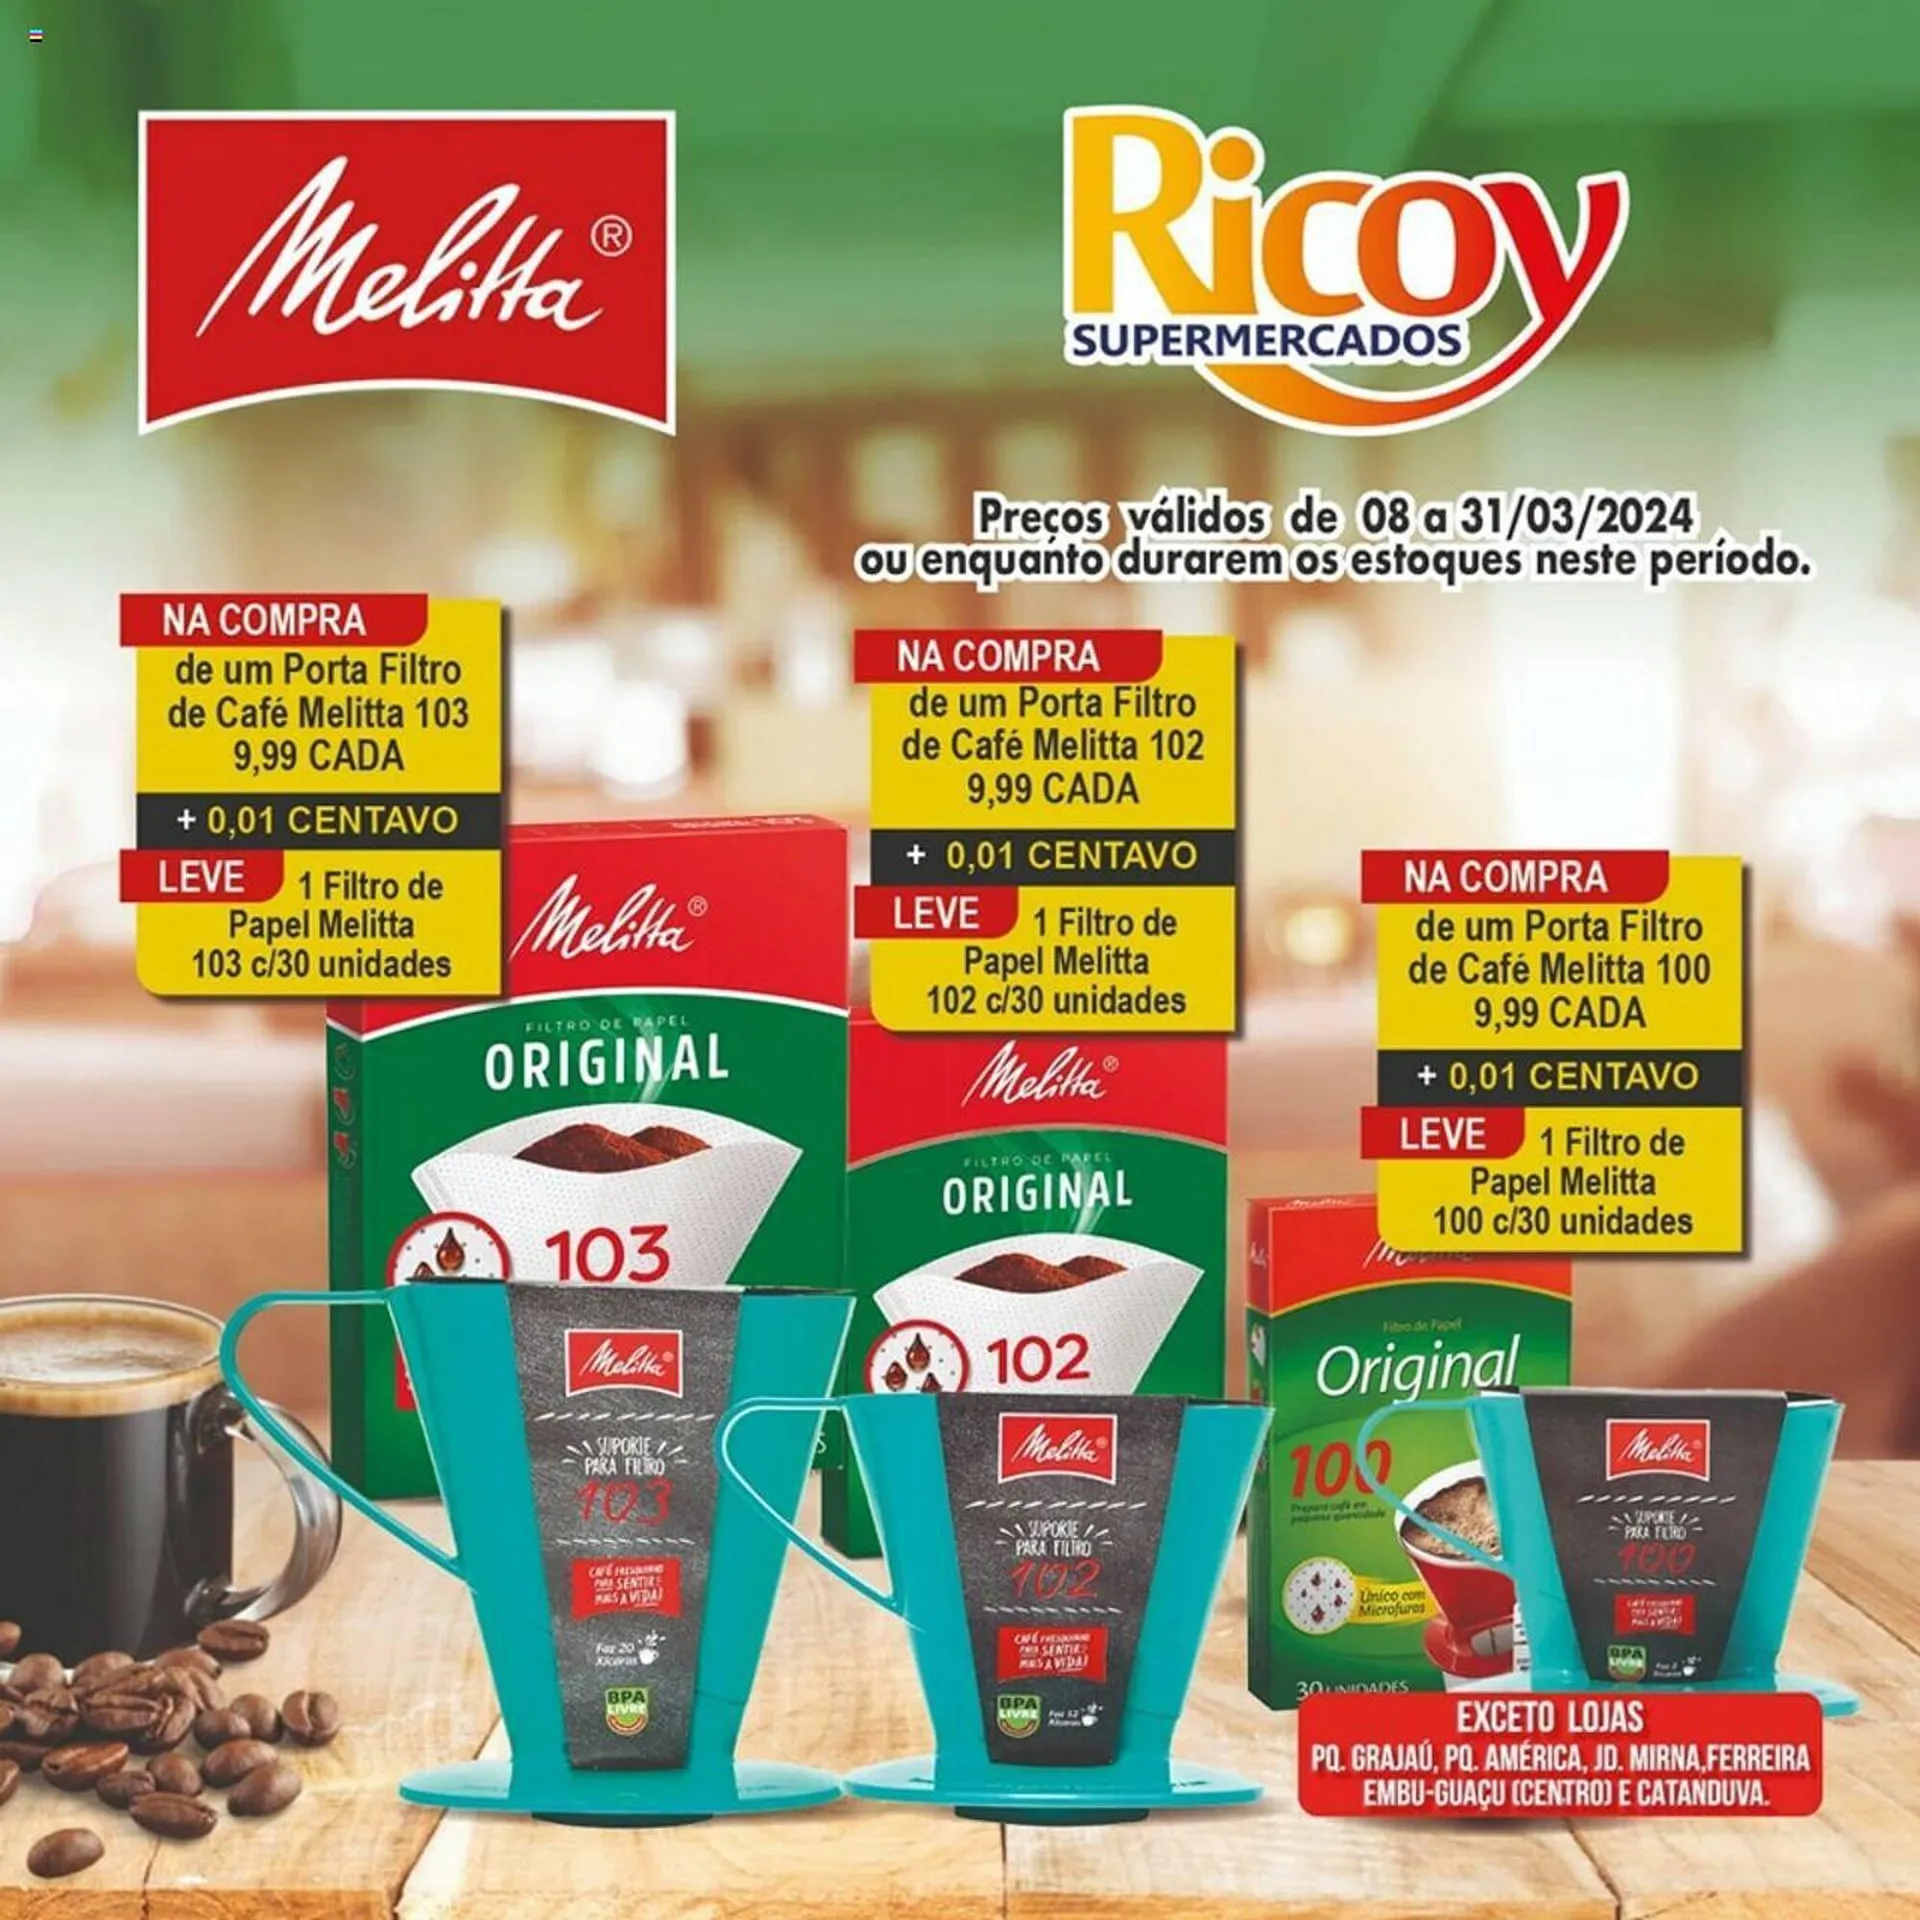 Encarte de Catálogo Ricoy Supermercados 8 de março até 31 de março 2024 - Pagina 